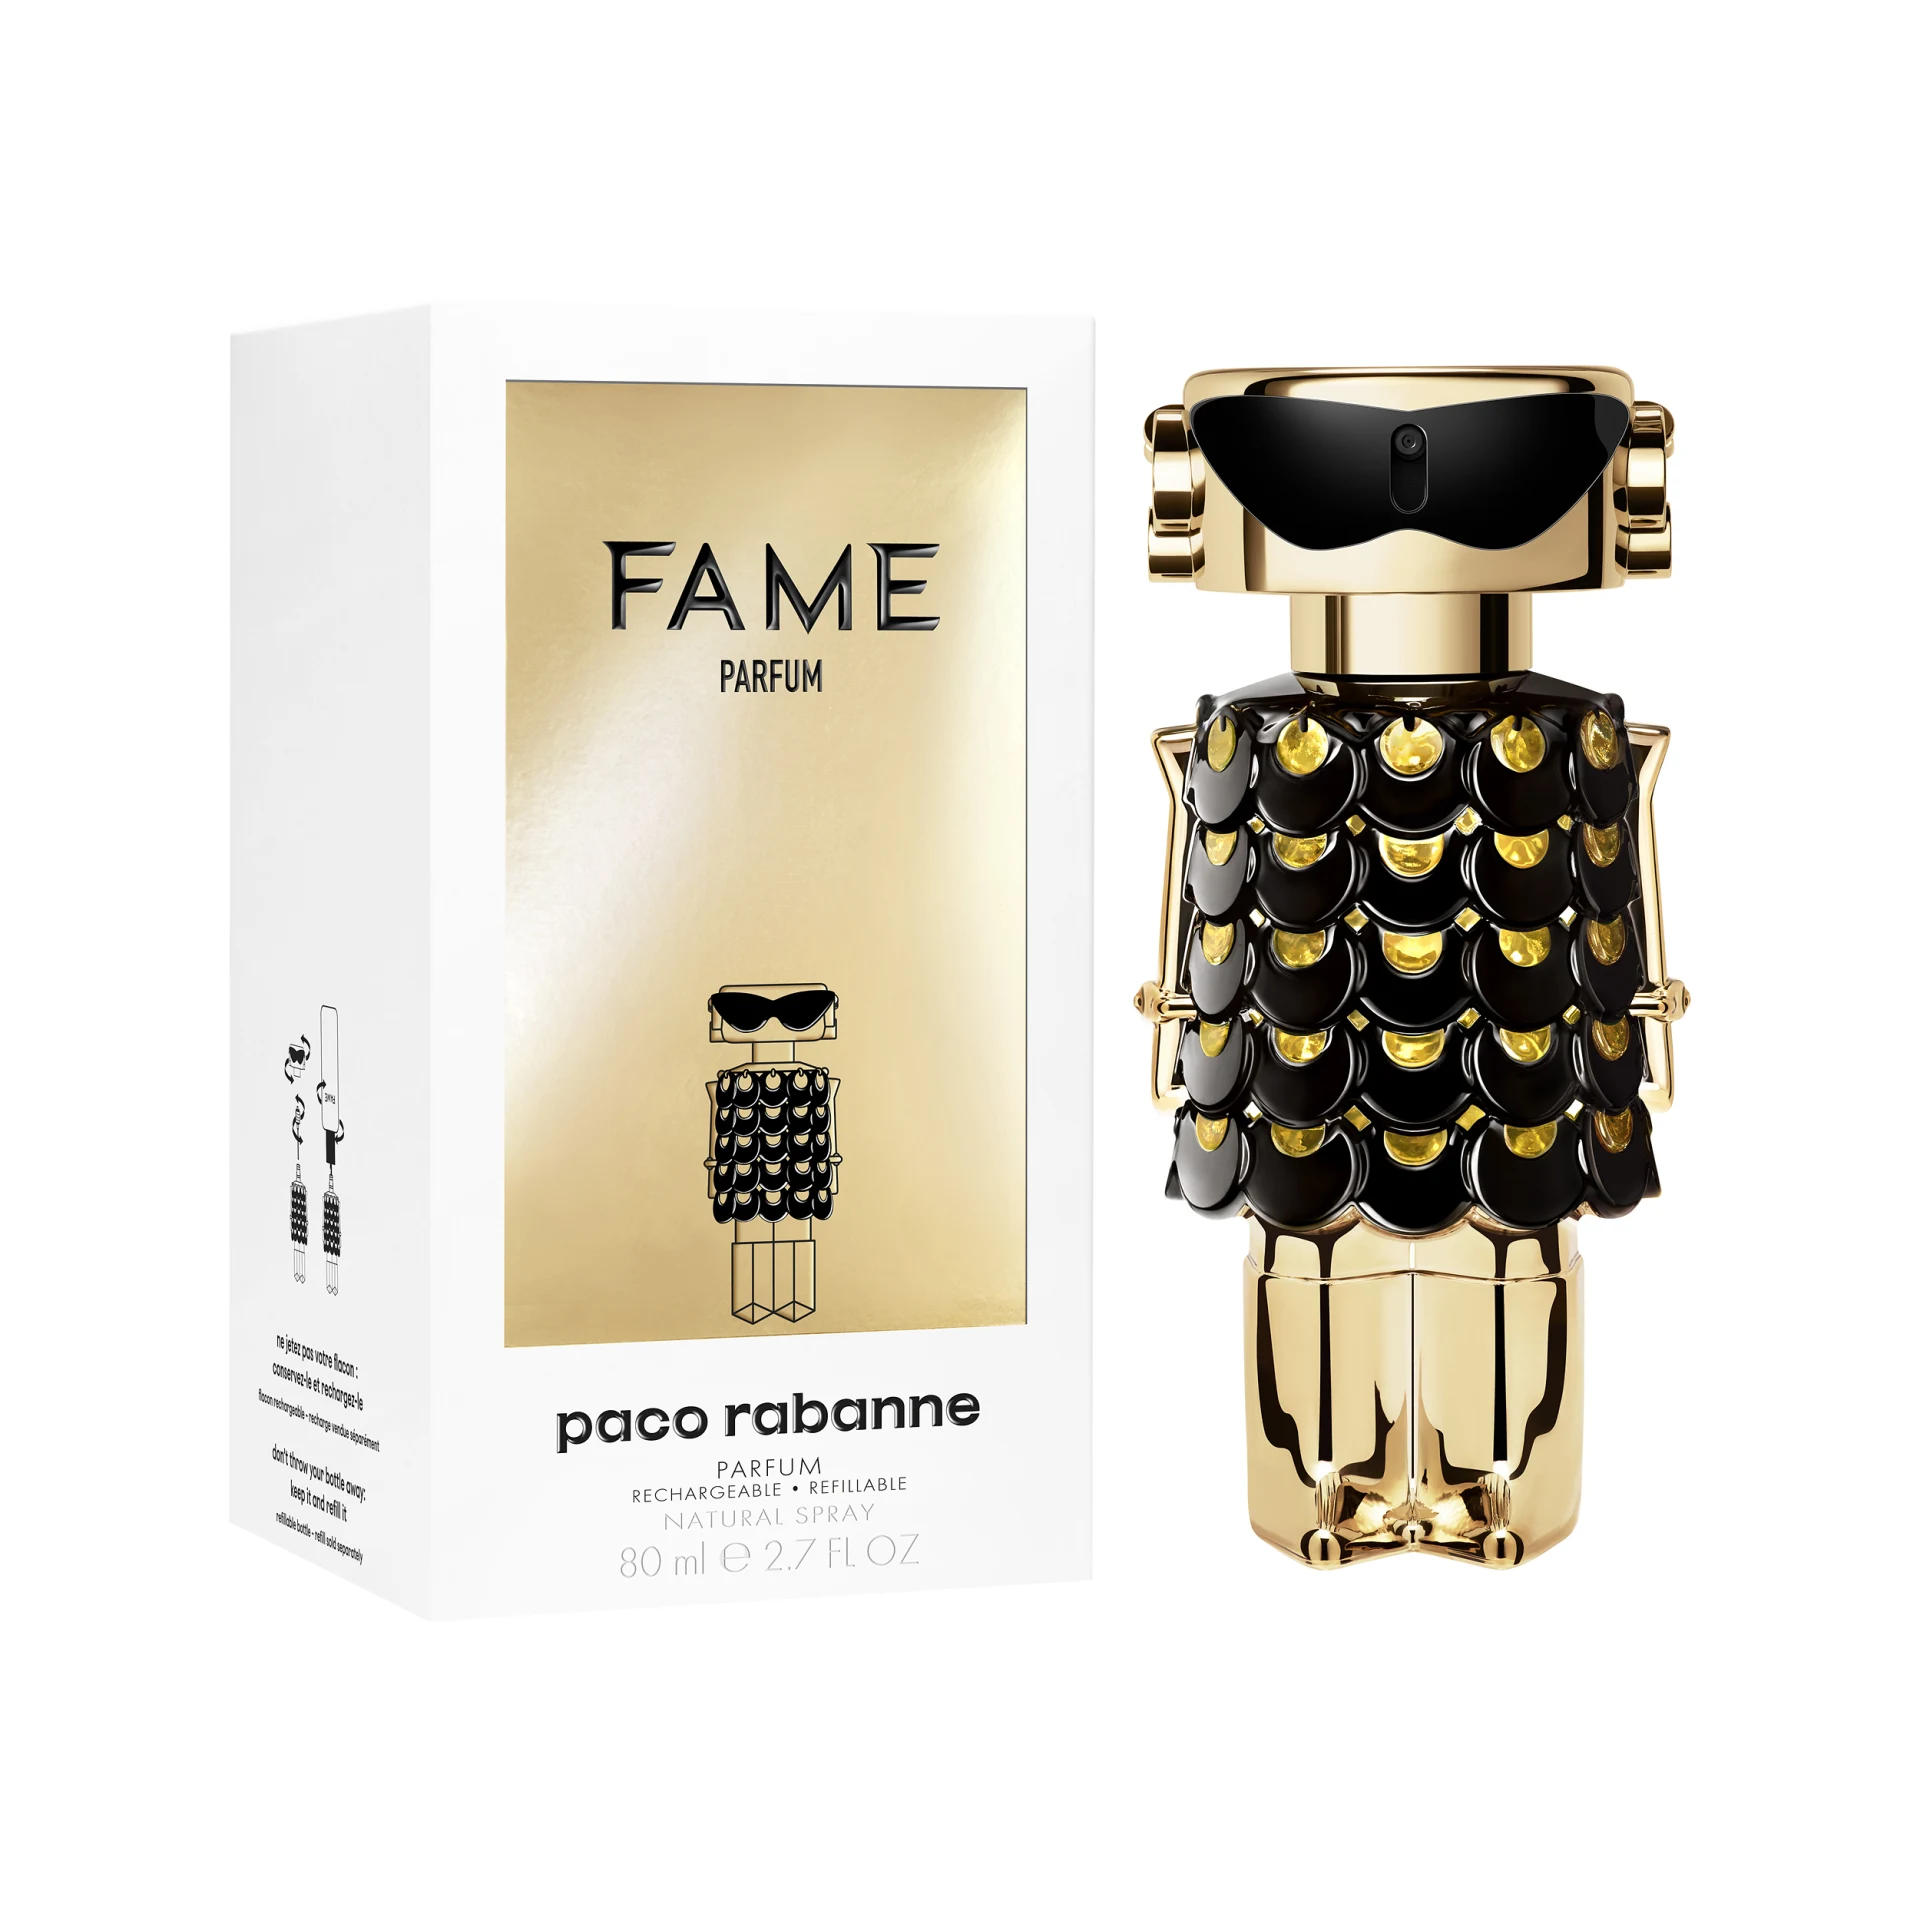 Fame Parfum 80ml